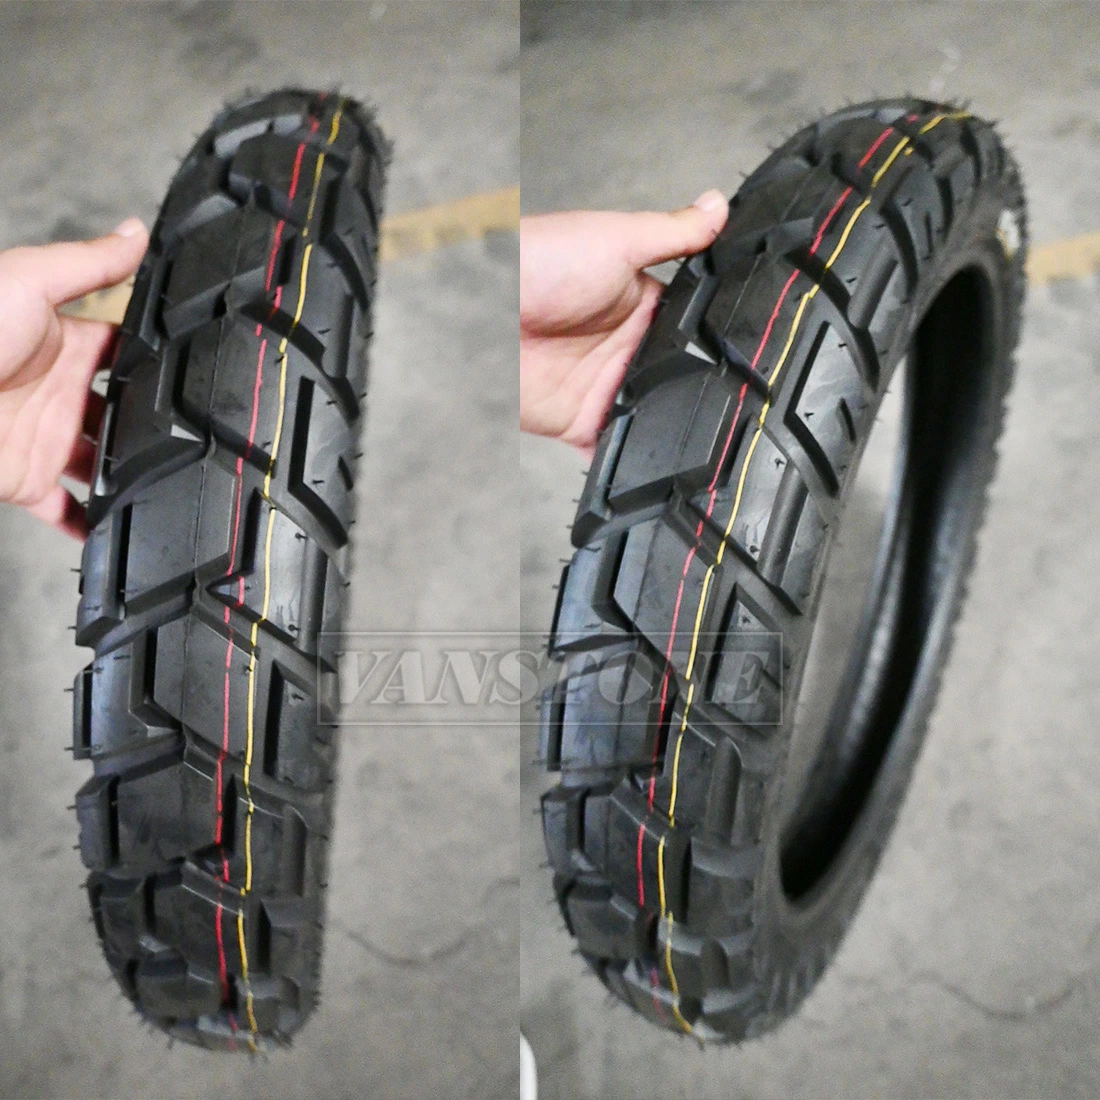 Melhor qualidade de OEM Vstway off road 4.10-18 Tubeless pneus de borracha de pneus de Moto